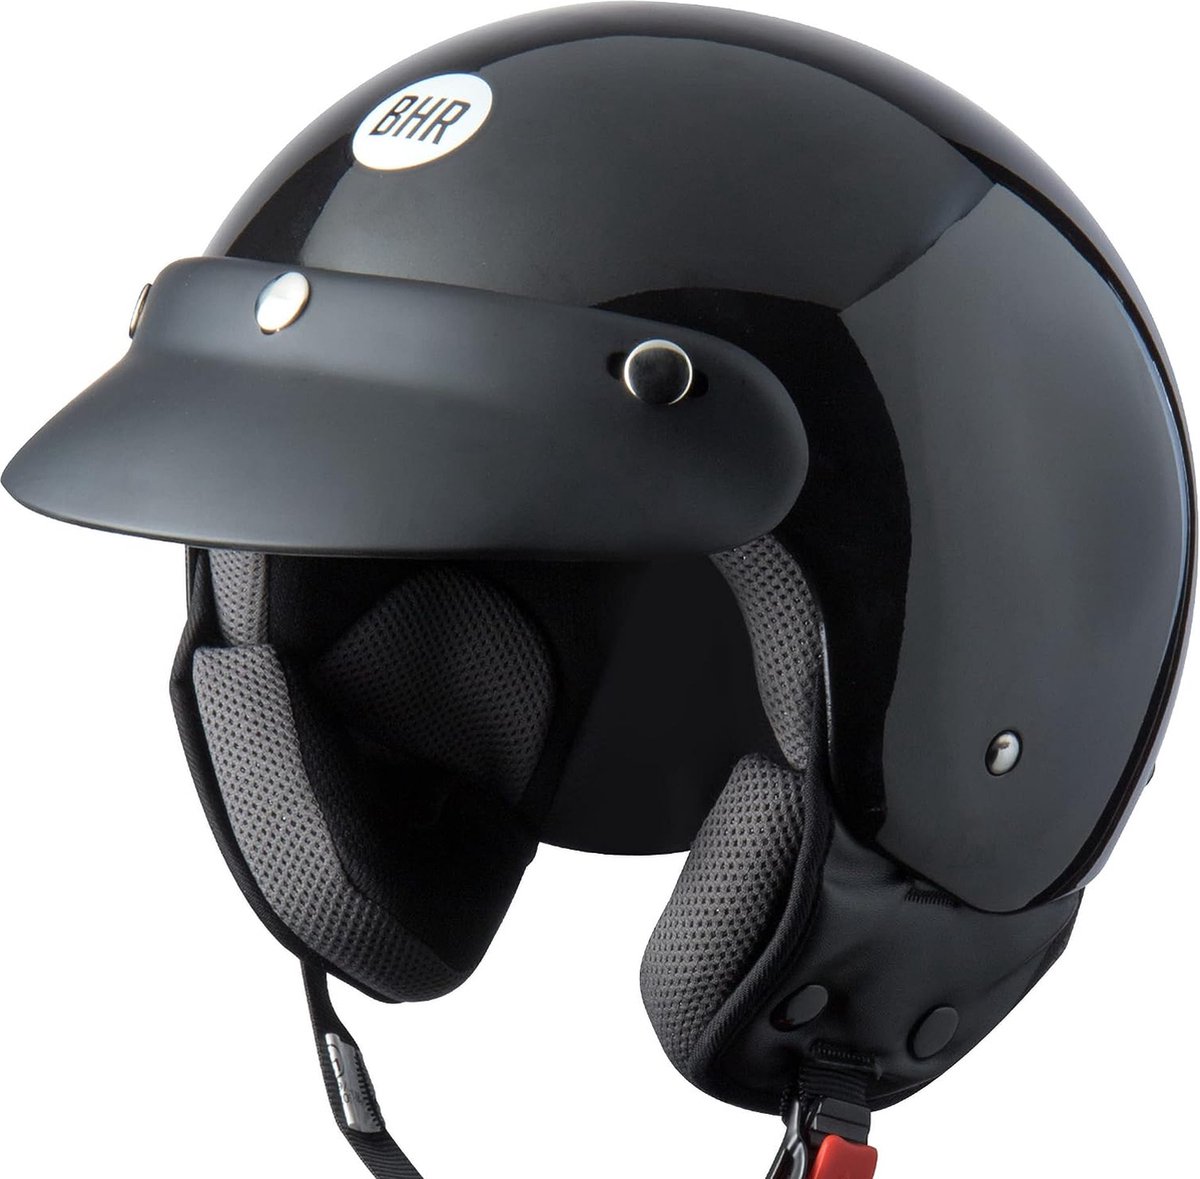 Scooter Helm | Praktische Helm Scooter ECE Goedgekeurd | Motorfiets Jet Helm met Verwijderbaar Gezichtskussen & Micrometrische Ontgrendeling | ZWART METALLIC | S